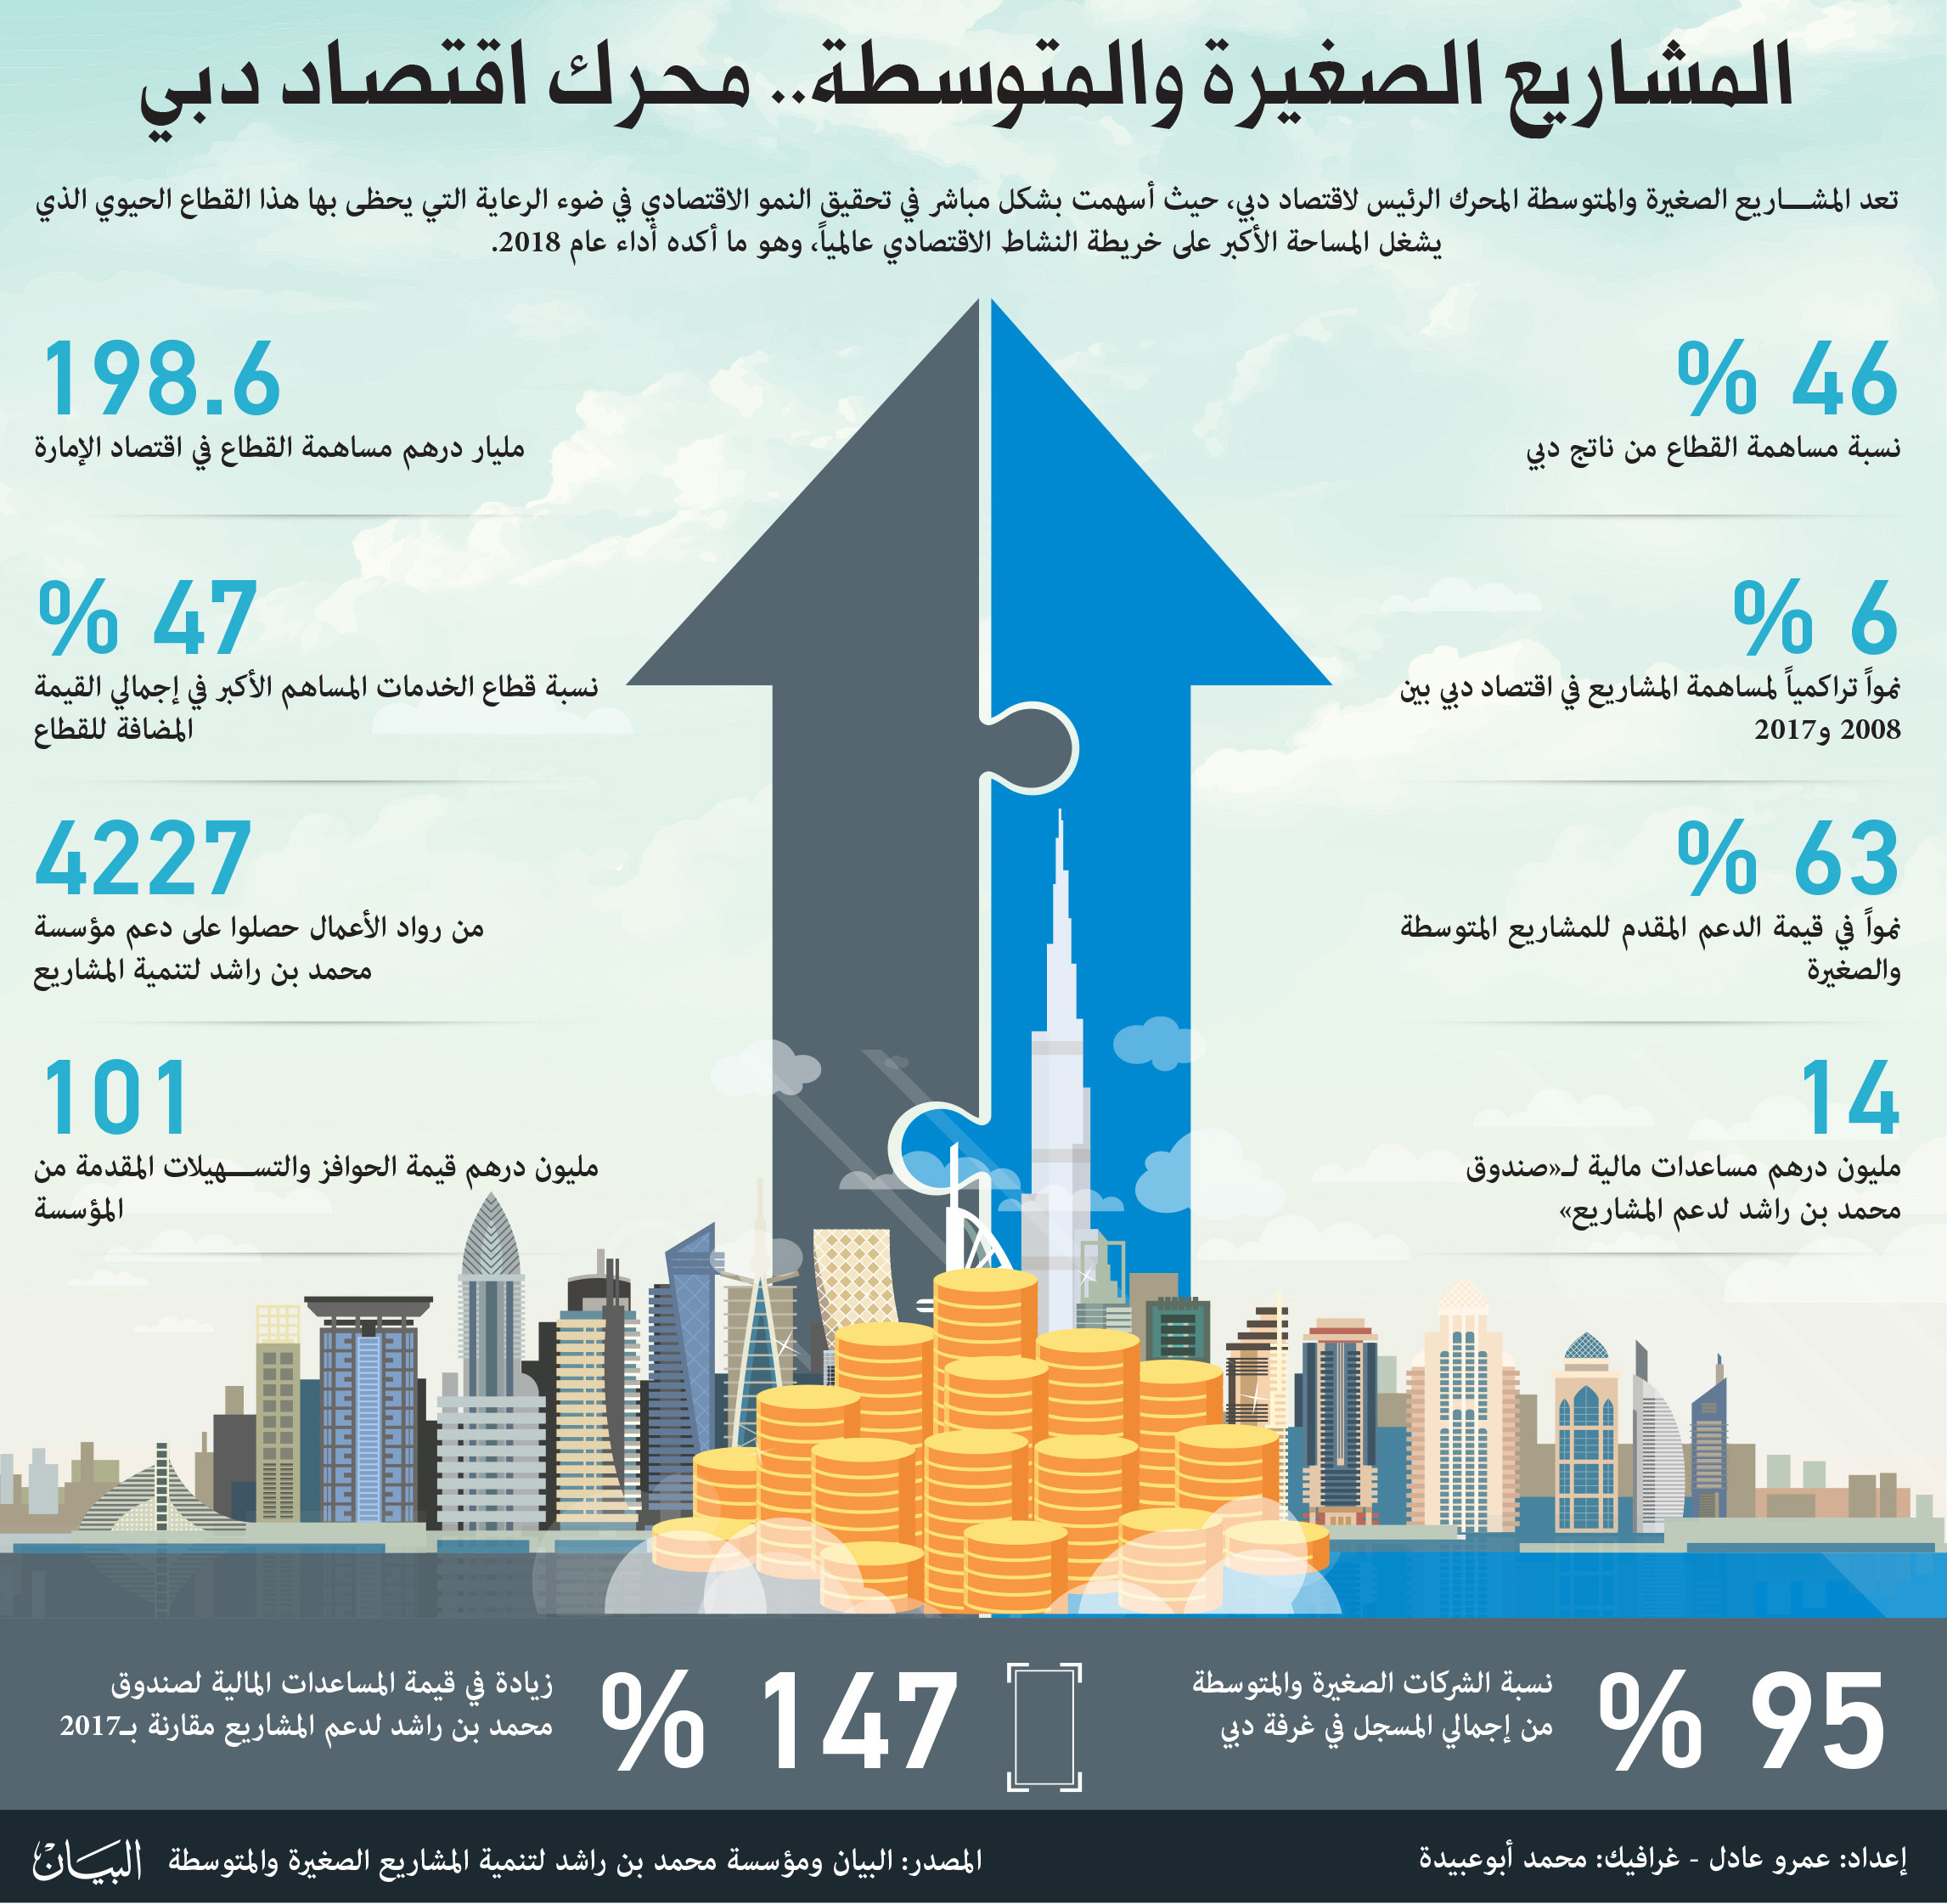 المتطلبات التعاقدية للشركات الصغيرة والمتوسطة في دولة الإمارات العربية المتحدة